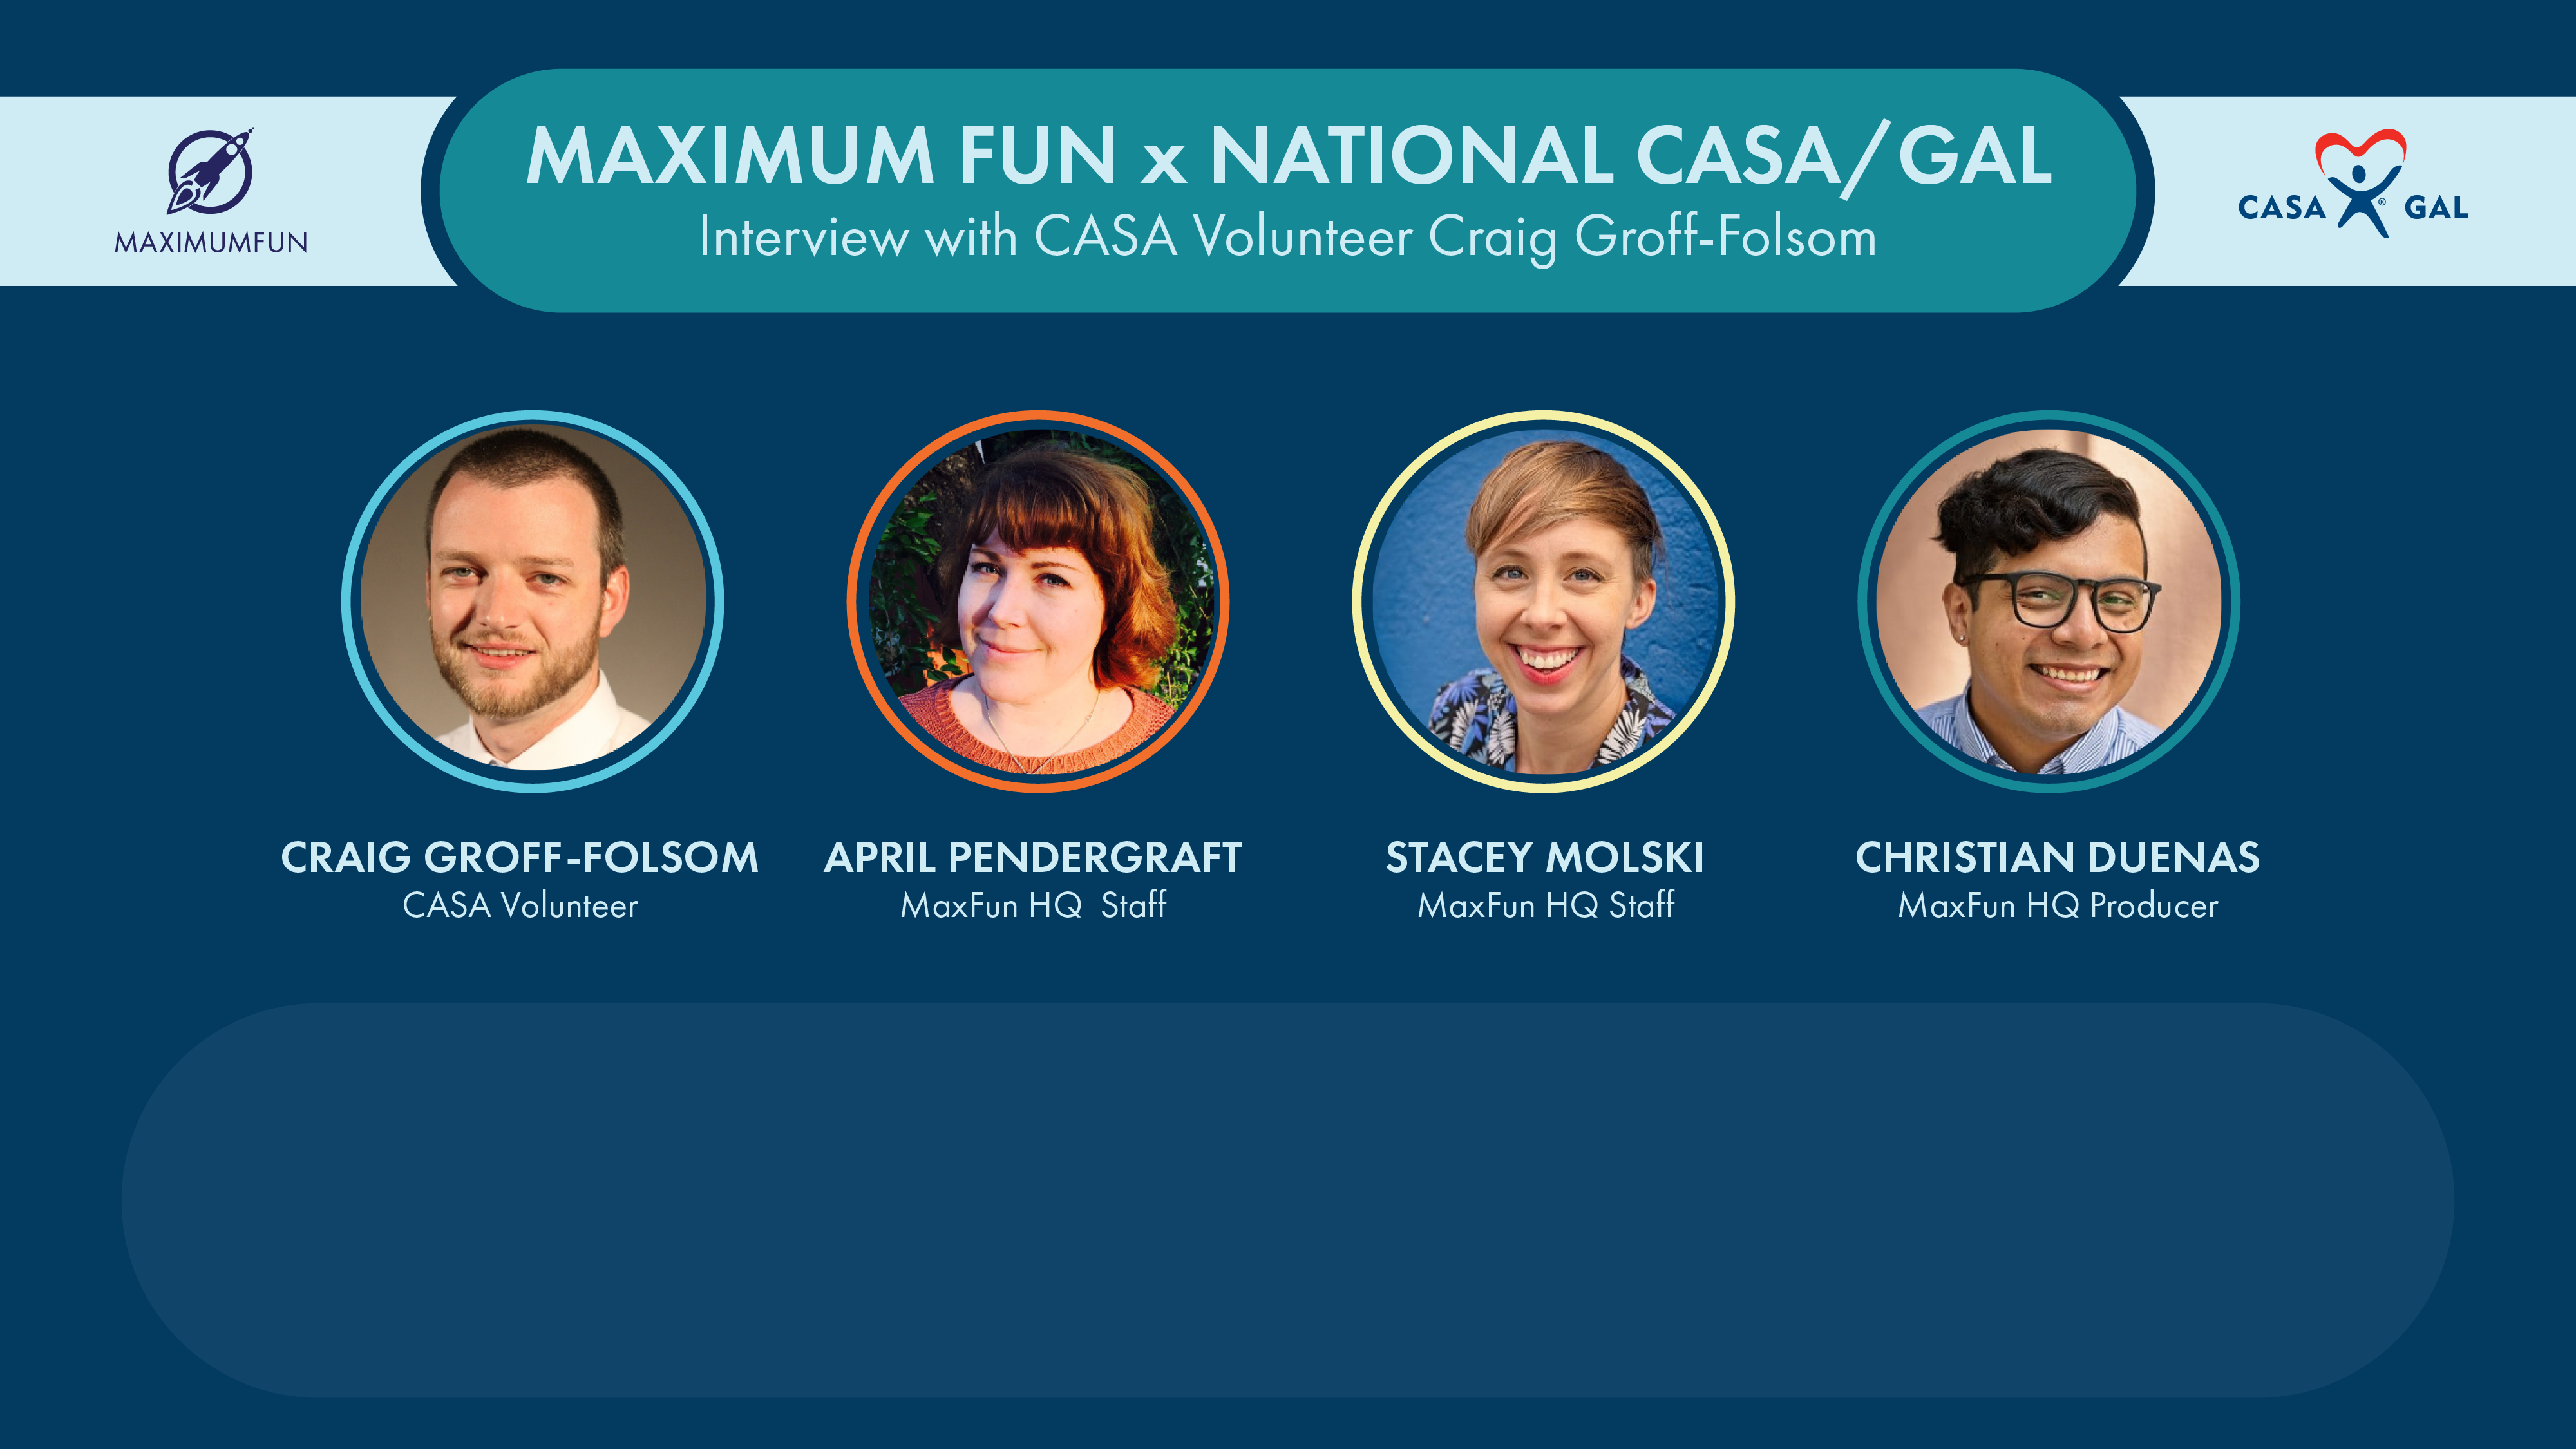 National CASA/GAL and Craig Groff-Folsom